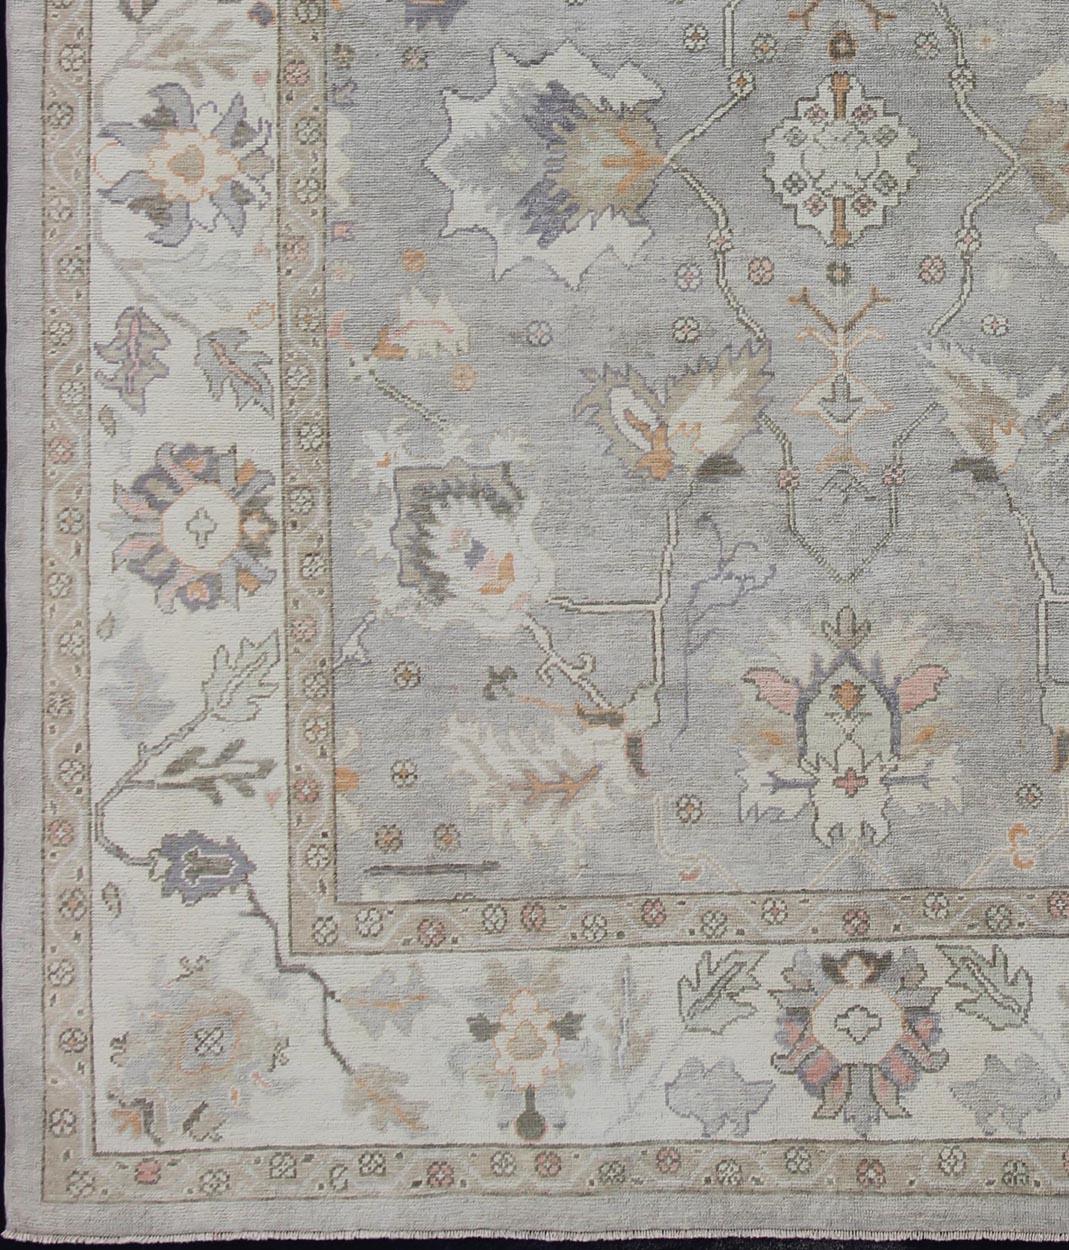 Tapis turc Oushak avec une palette de couleurs neutres et un design floral all-over, tapis en-176558, pays d'origine / type : Turquie / Oushak

Ce tapis traditionnel Oushak de Turquie présente une palette de couleurs neutres et un motif floral sur